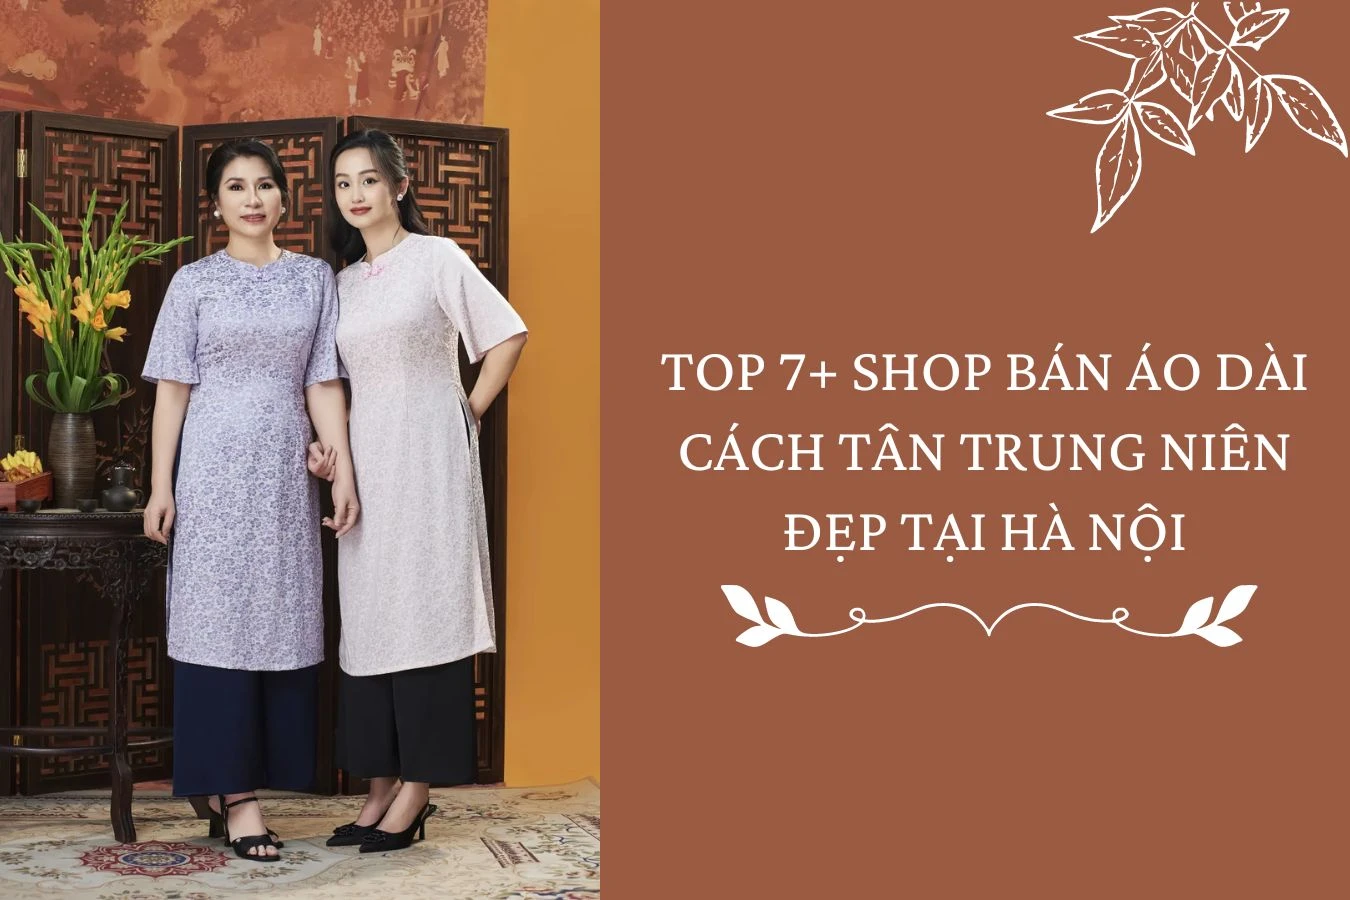 TOP 7+ shop bán áo dài cách tân trung niên đẹp tại Hà Nội